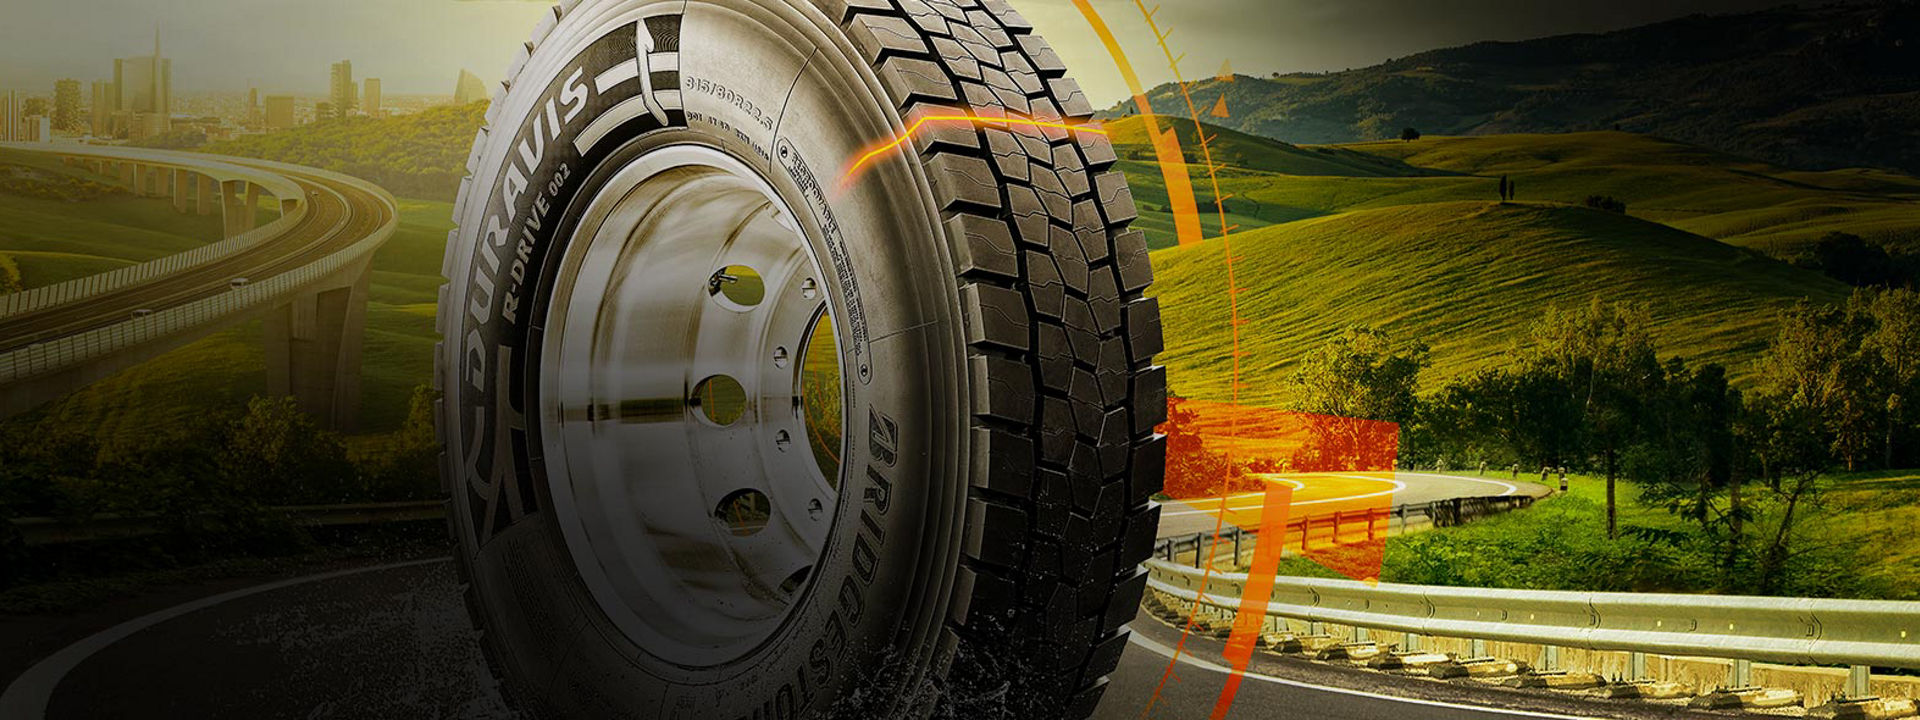 Obrázek ukazuje pneumatiku Bridgestone Duravis R002 na dálnici s grafikou, která sdílí její jedinečné klíčové vlastnosti.